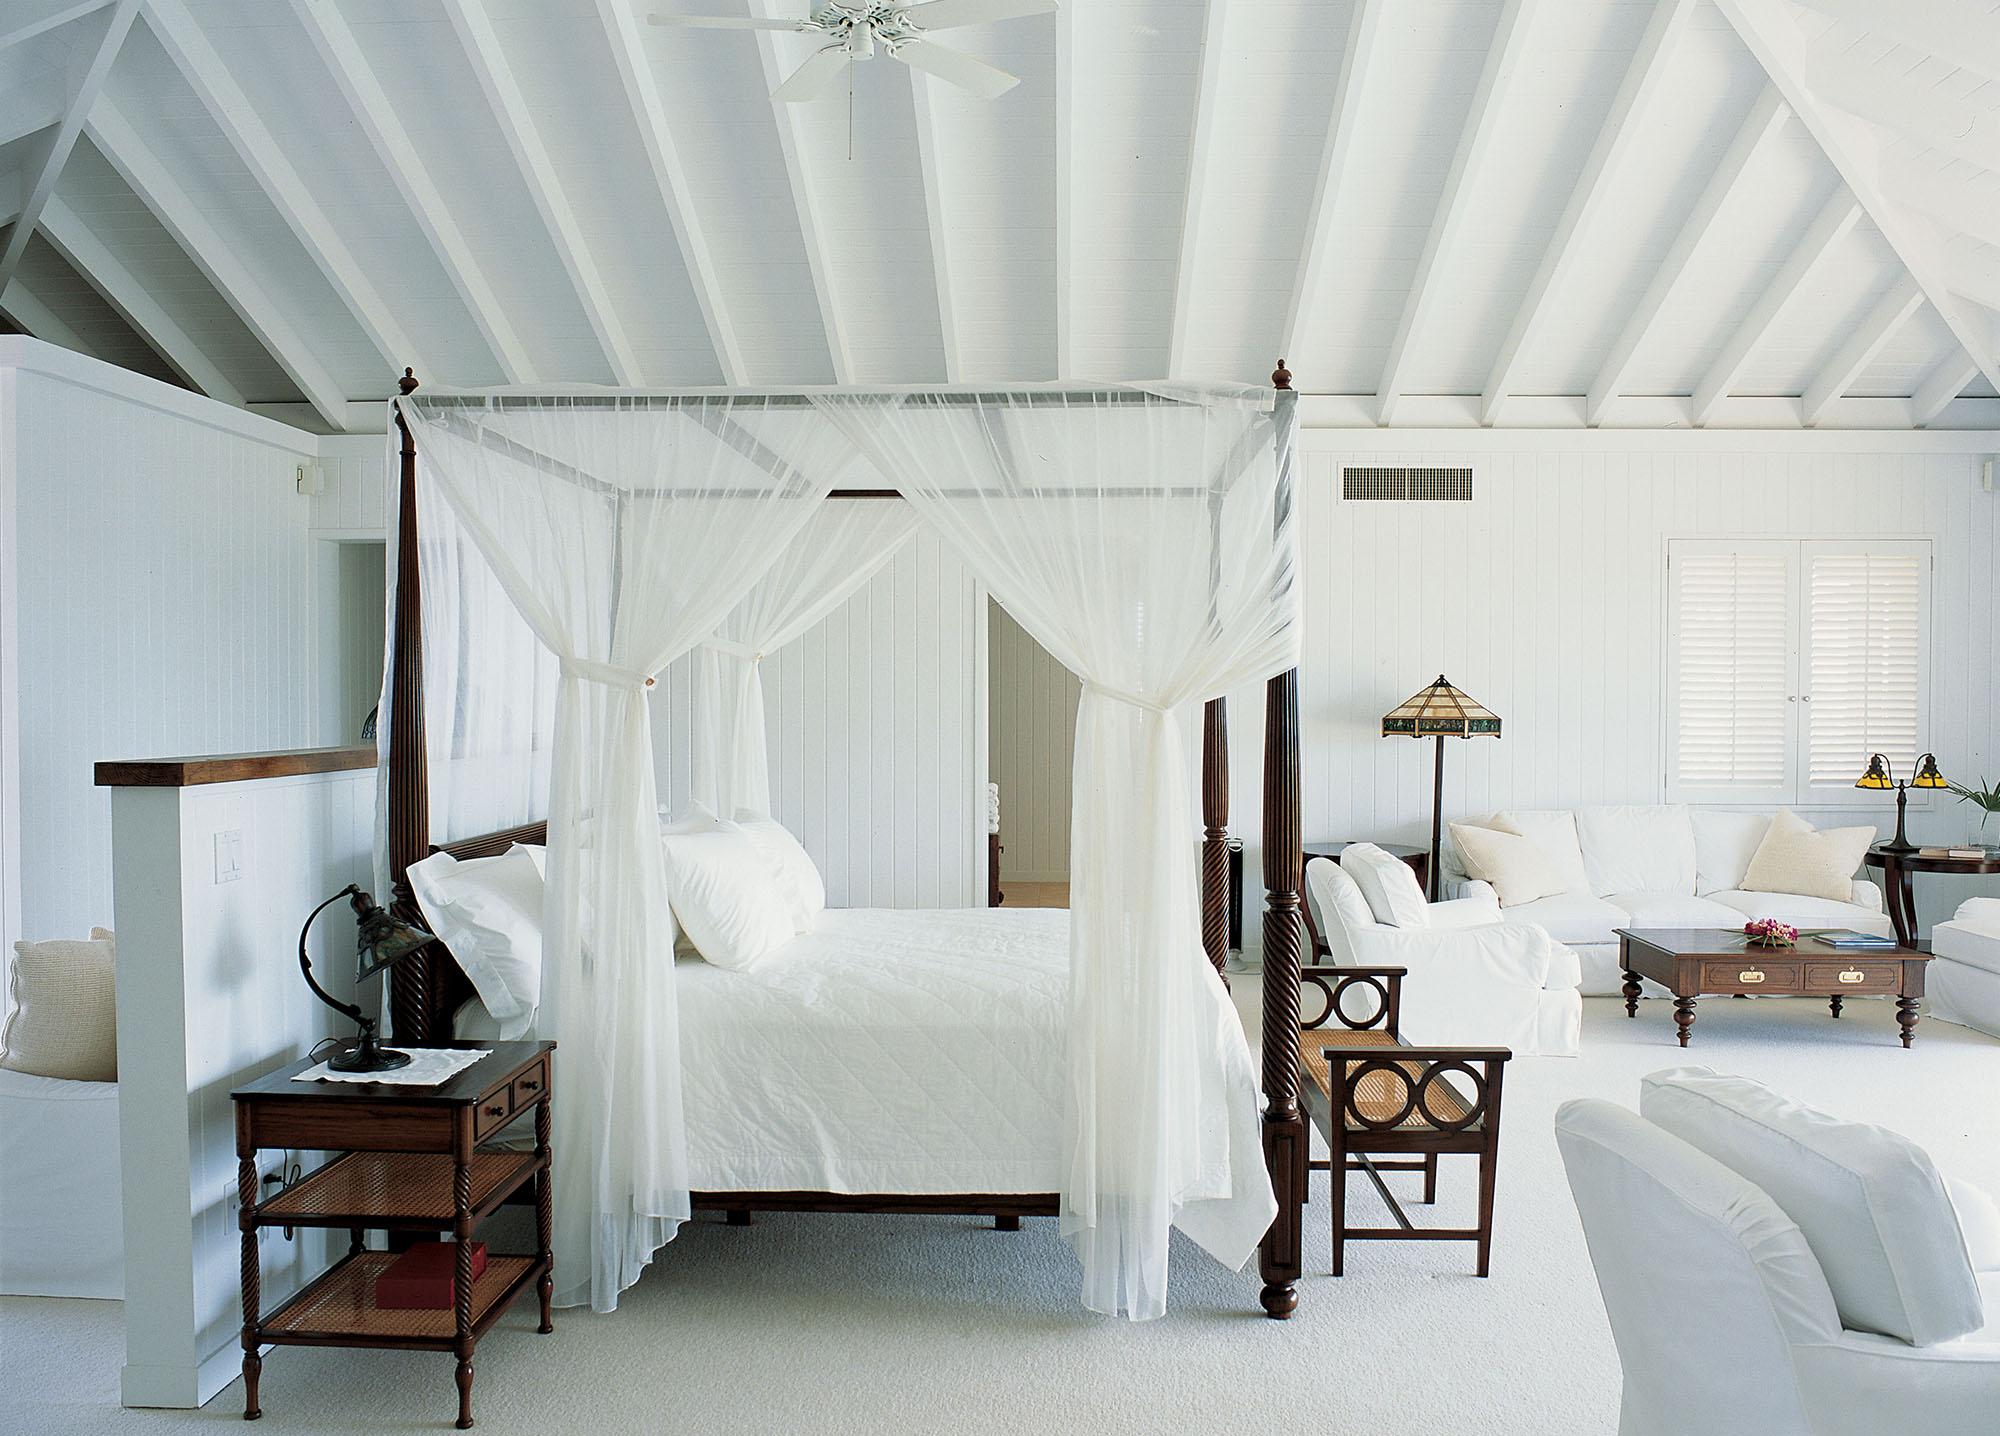 Кровать с балдахином – романтика в вашей спальне